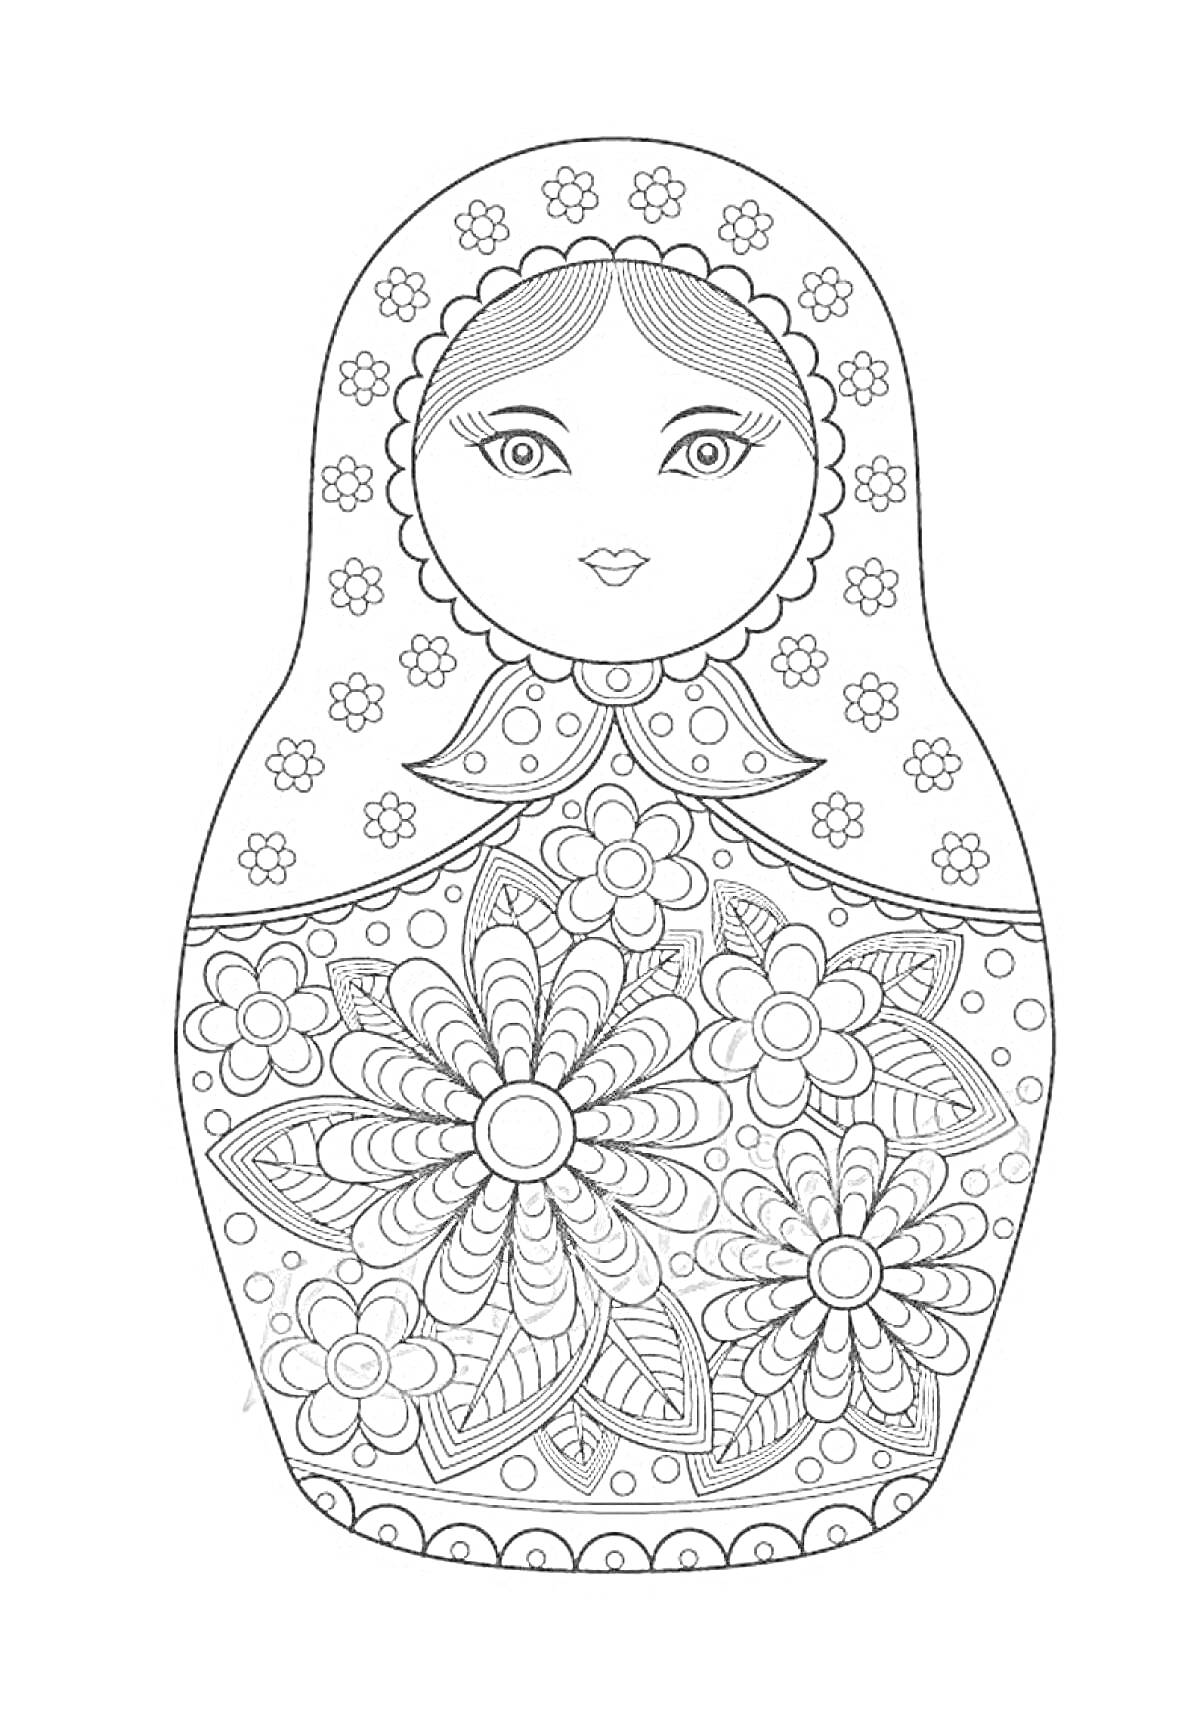 Матрешка с цветочным узором, лицевая часть с глазами, носом и ртом, узор на платке, крупные цветы и листья в центральной части